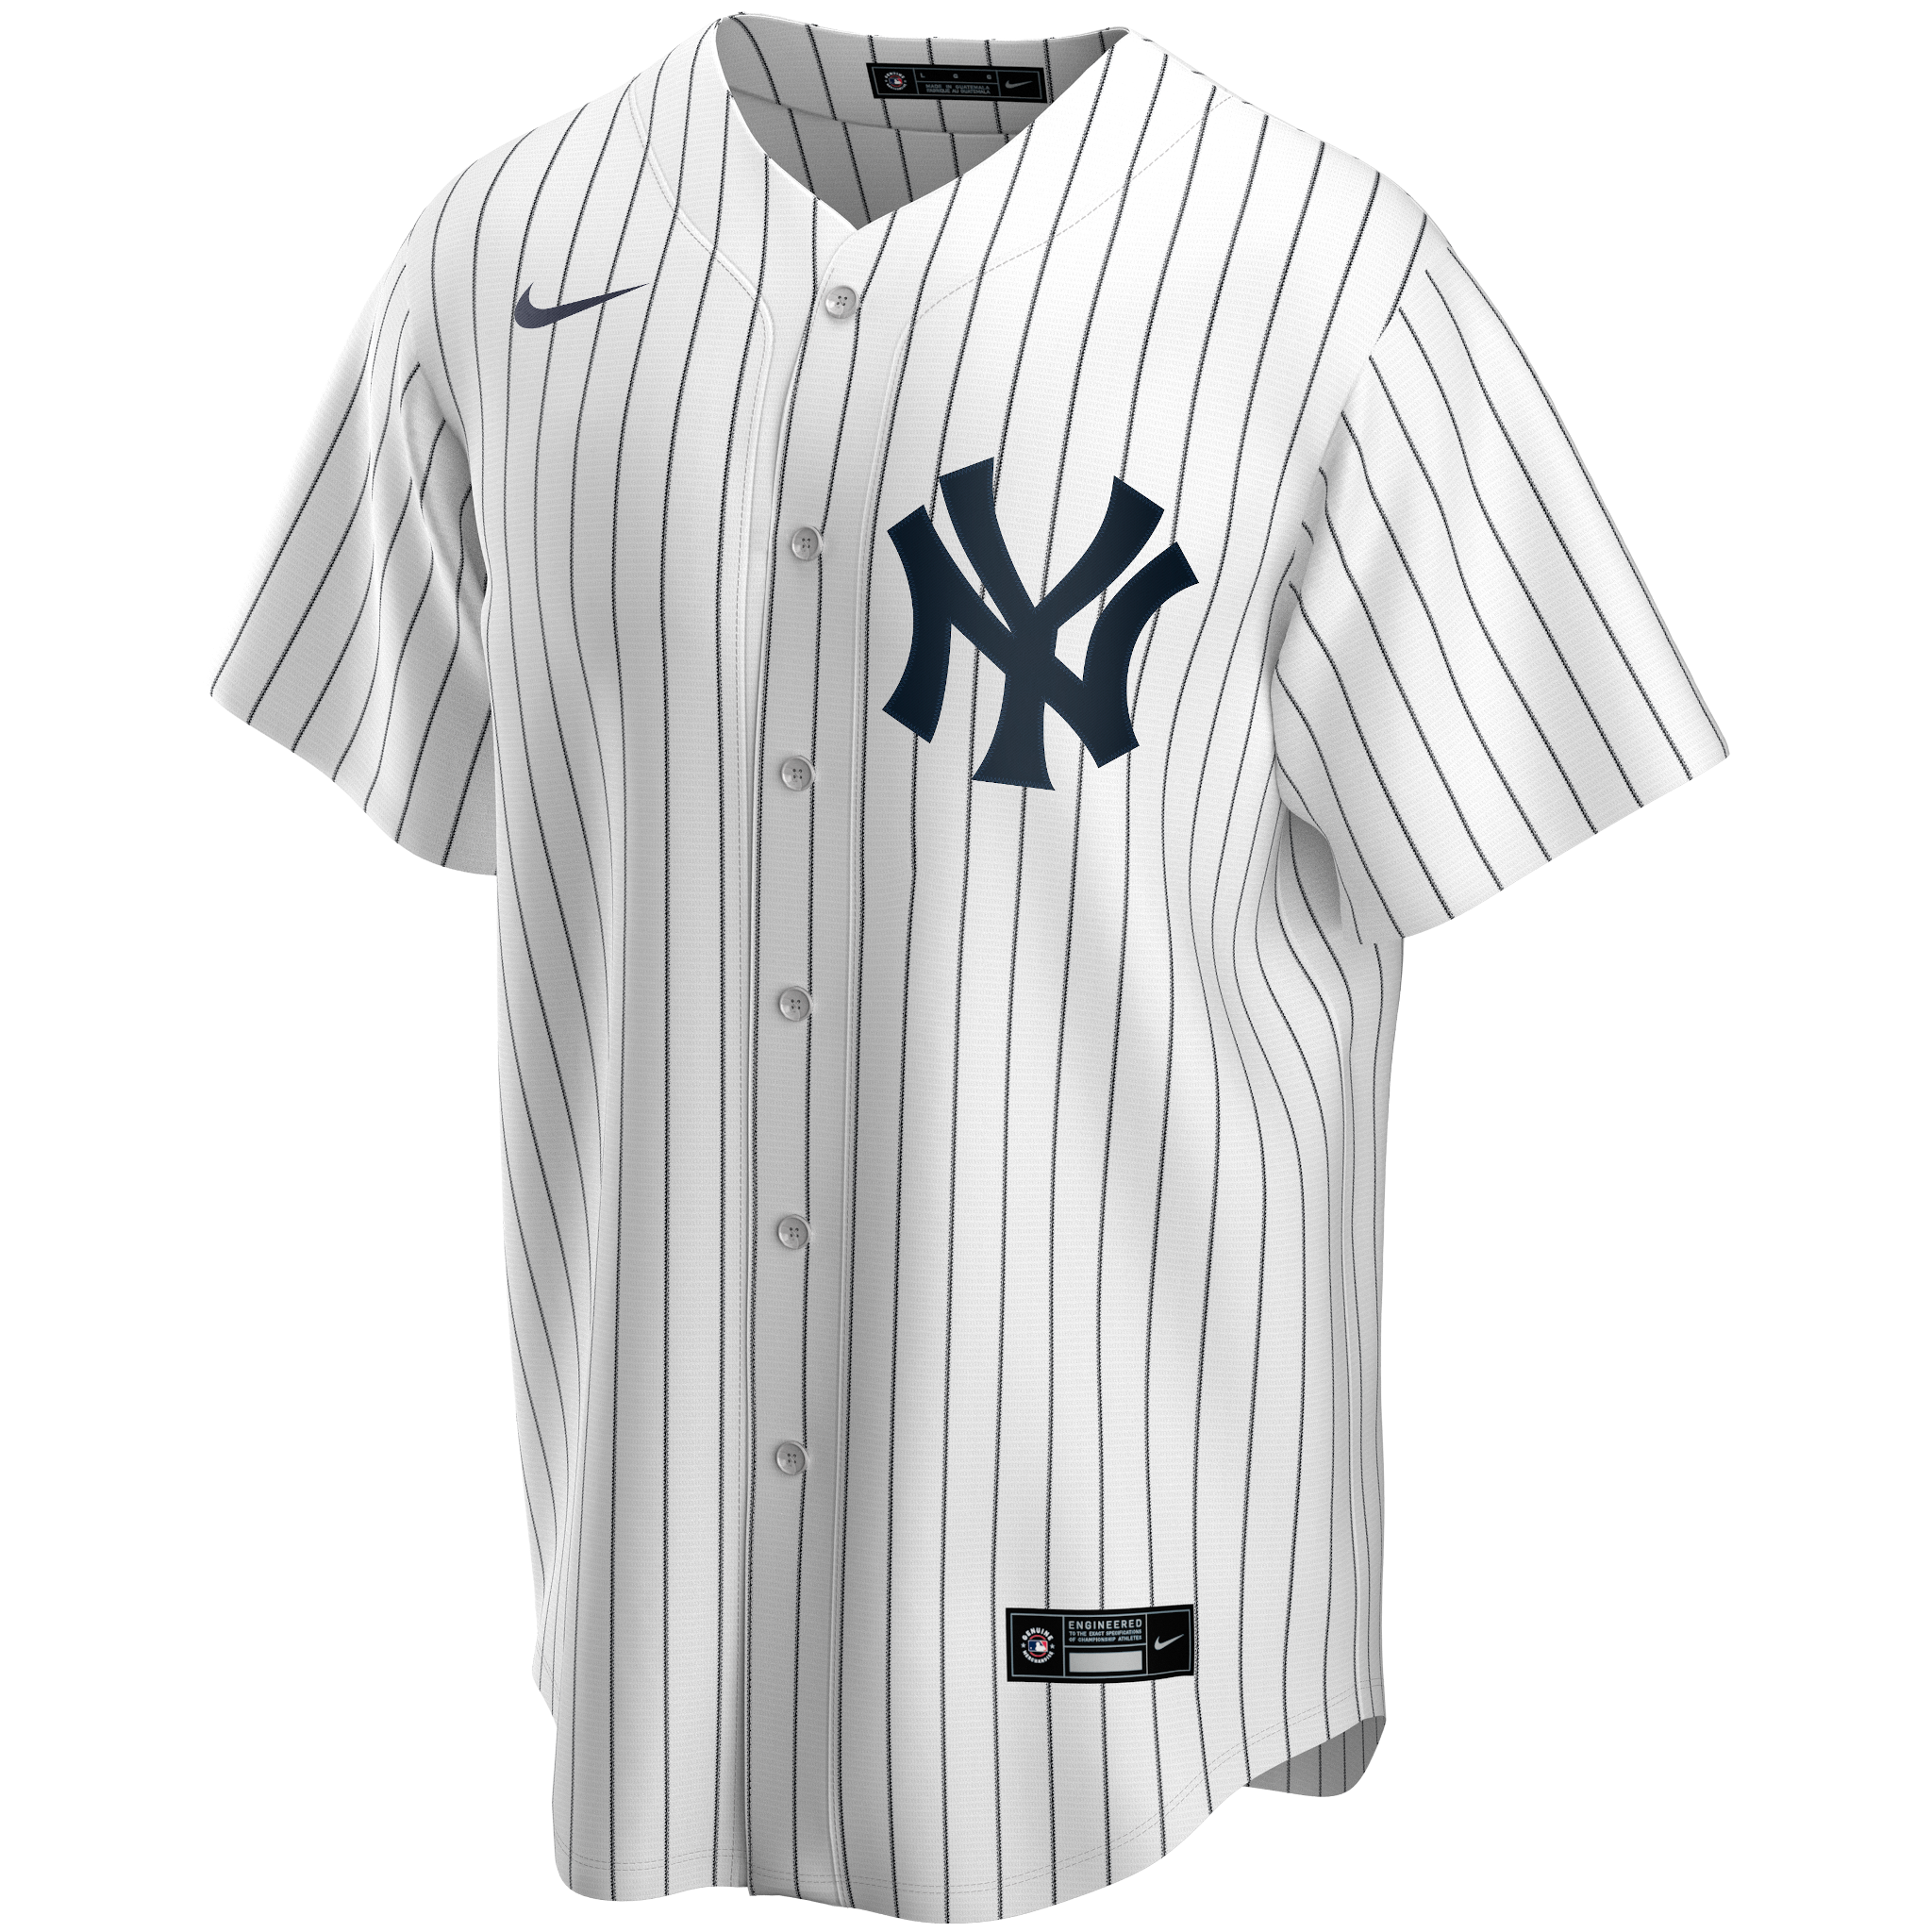 Genuine Merchandise, Shirts & Tops, Genuine Merchandise Yankees Baseball Jersey  3t